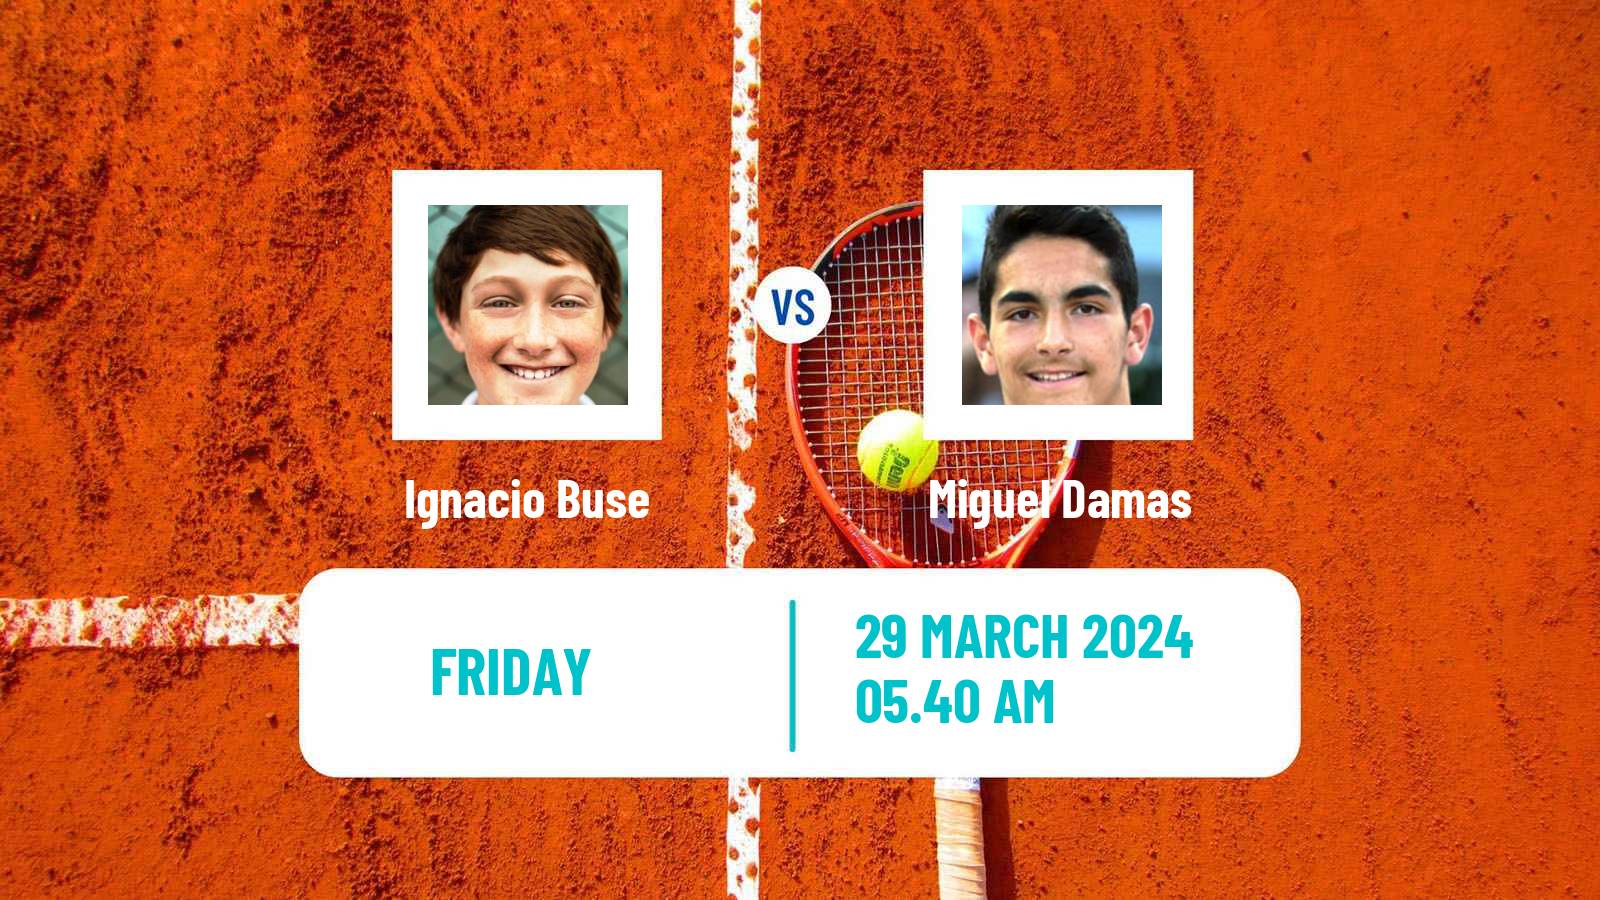 Tennis ITF M25 Tarragona Men Ignacio Buse - Miguel Damas